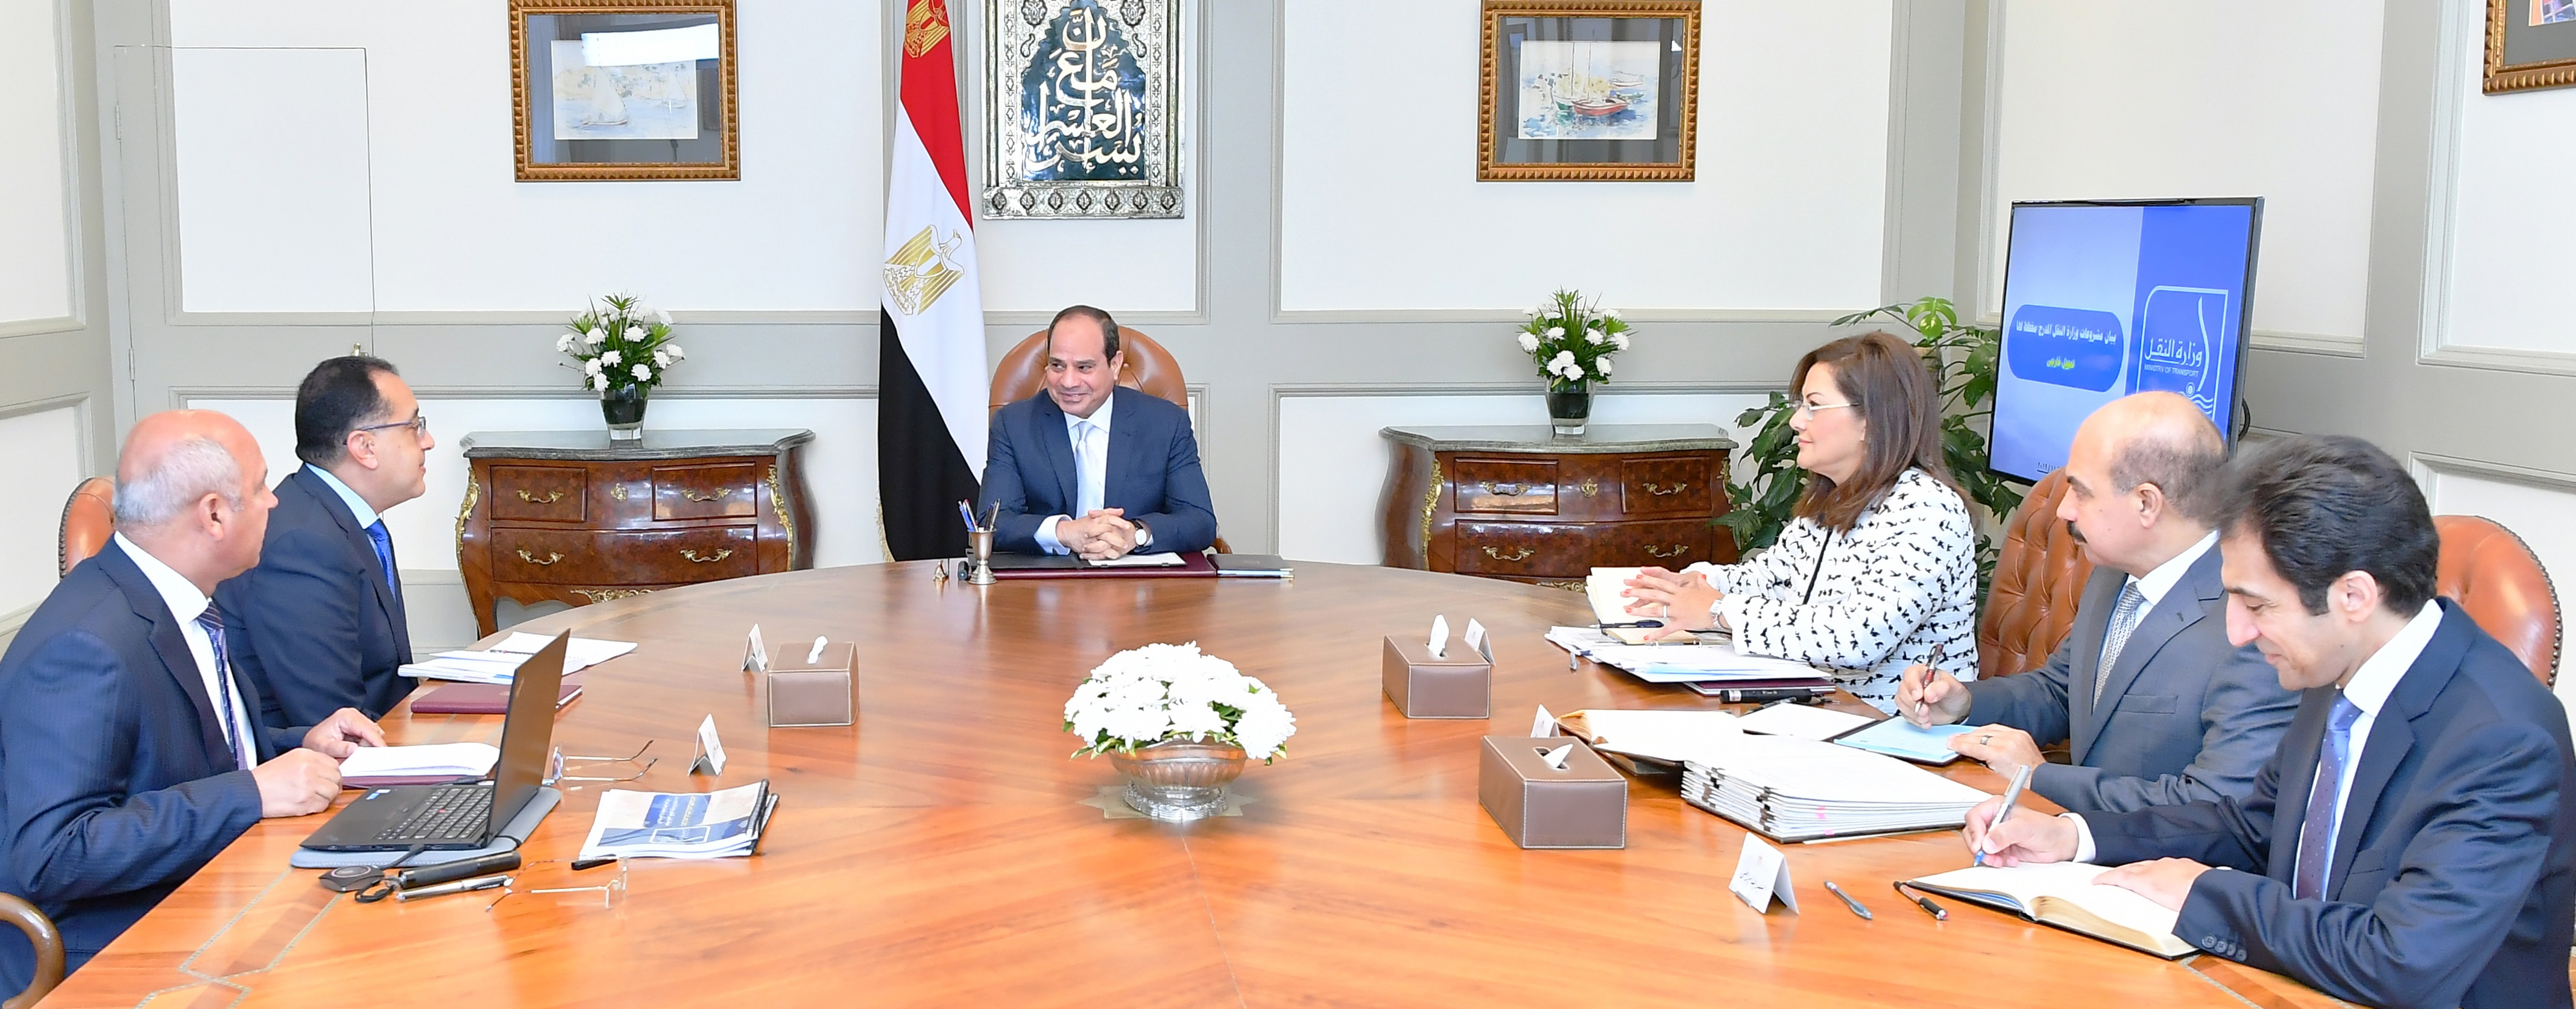   الرئيس السيسى يجتمع مع السادة رئيس مجلس الوزراء ووزيرة التخطيط والمتابعة والإصلاح الإداري ووزير النقل